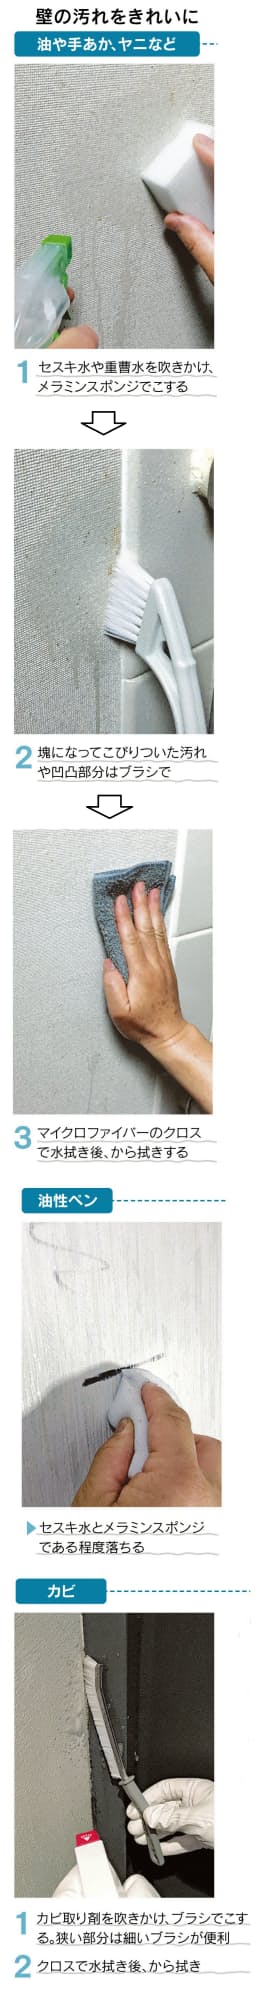 壁紙 お手入れでさっぱり 油汚れにセスキ水 重曹水 Woman Smart Nikkei Style